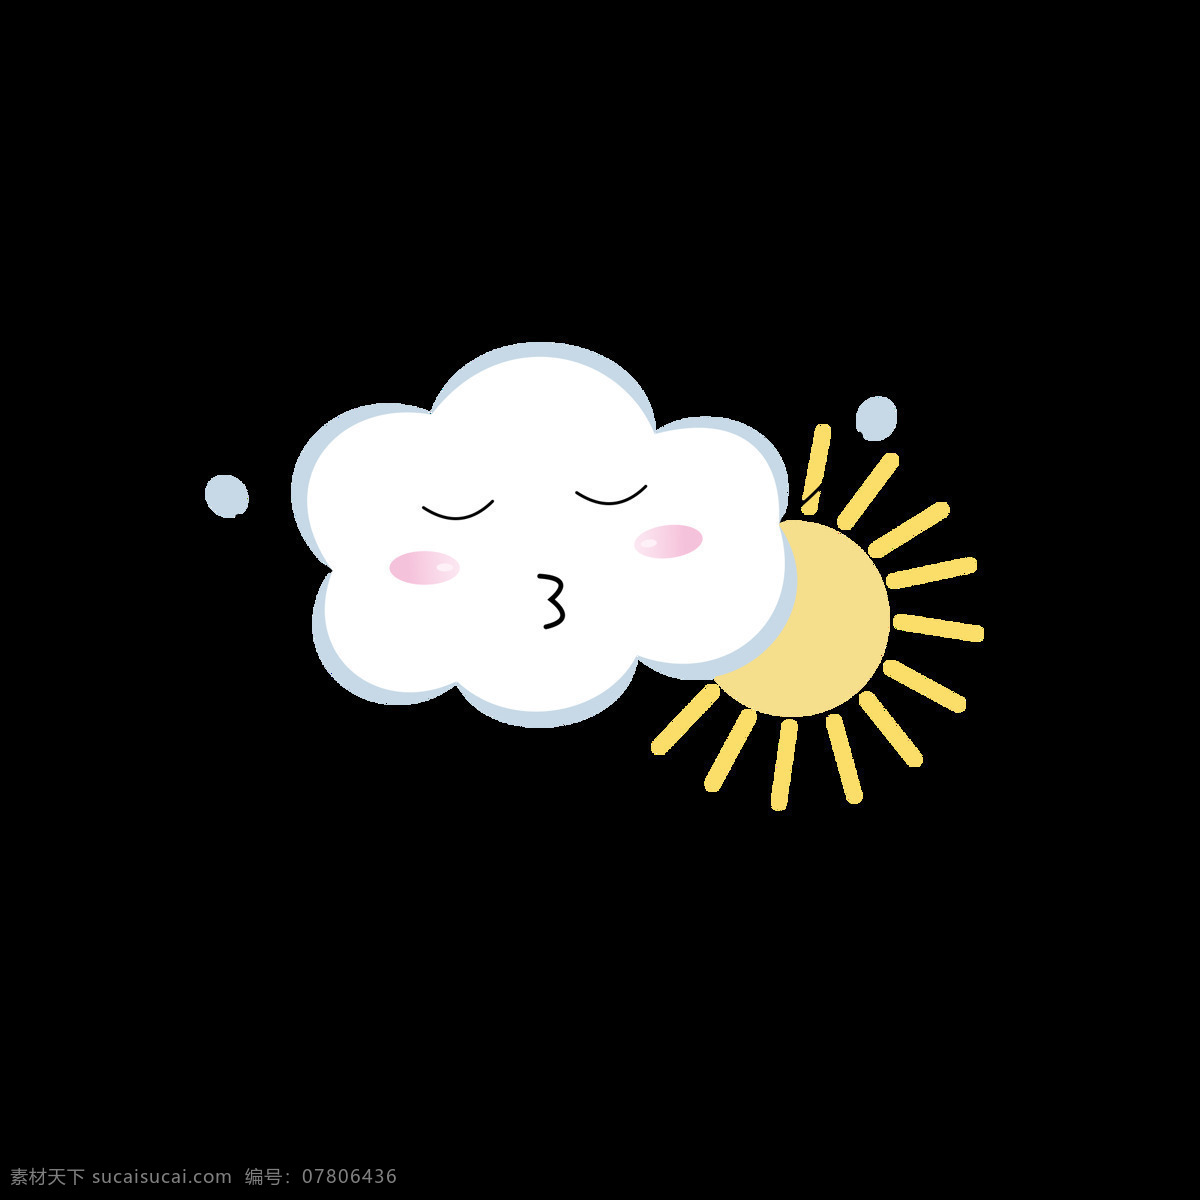 原创 白云 元素 卡通 可爱 天气 表情 包 云朵 晴天 元素设计 表情包 愉快